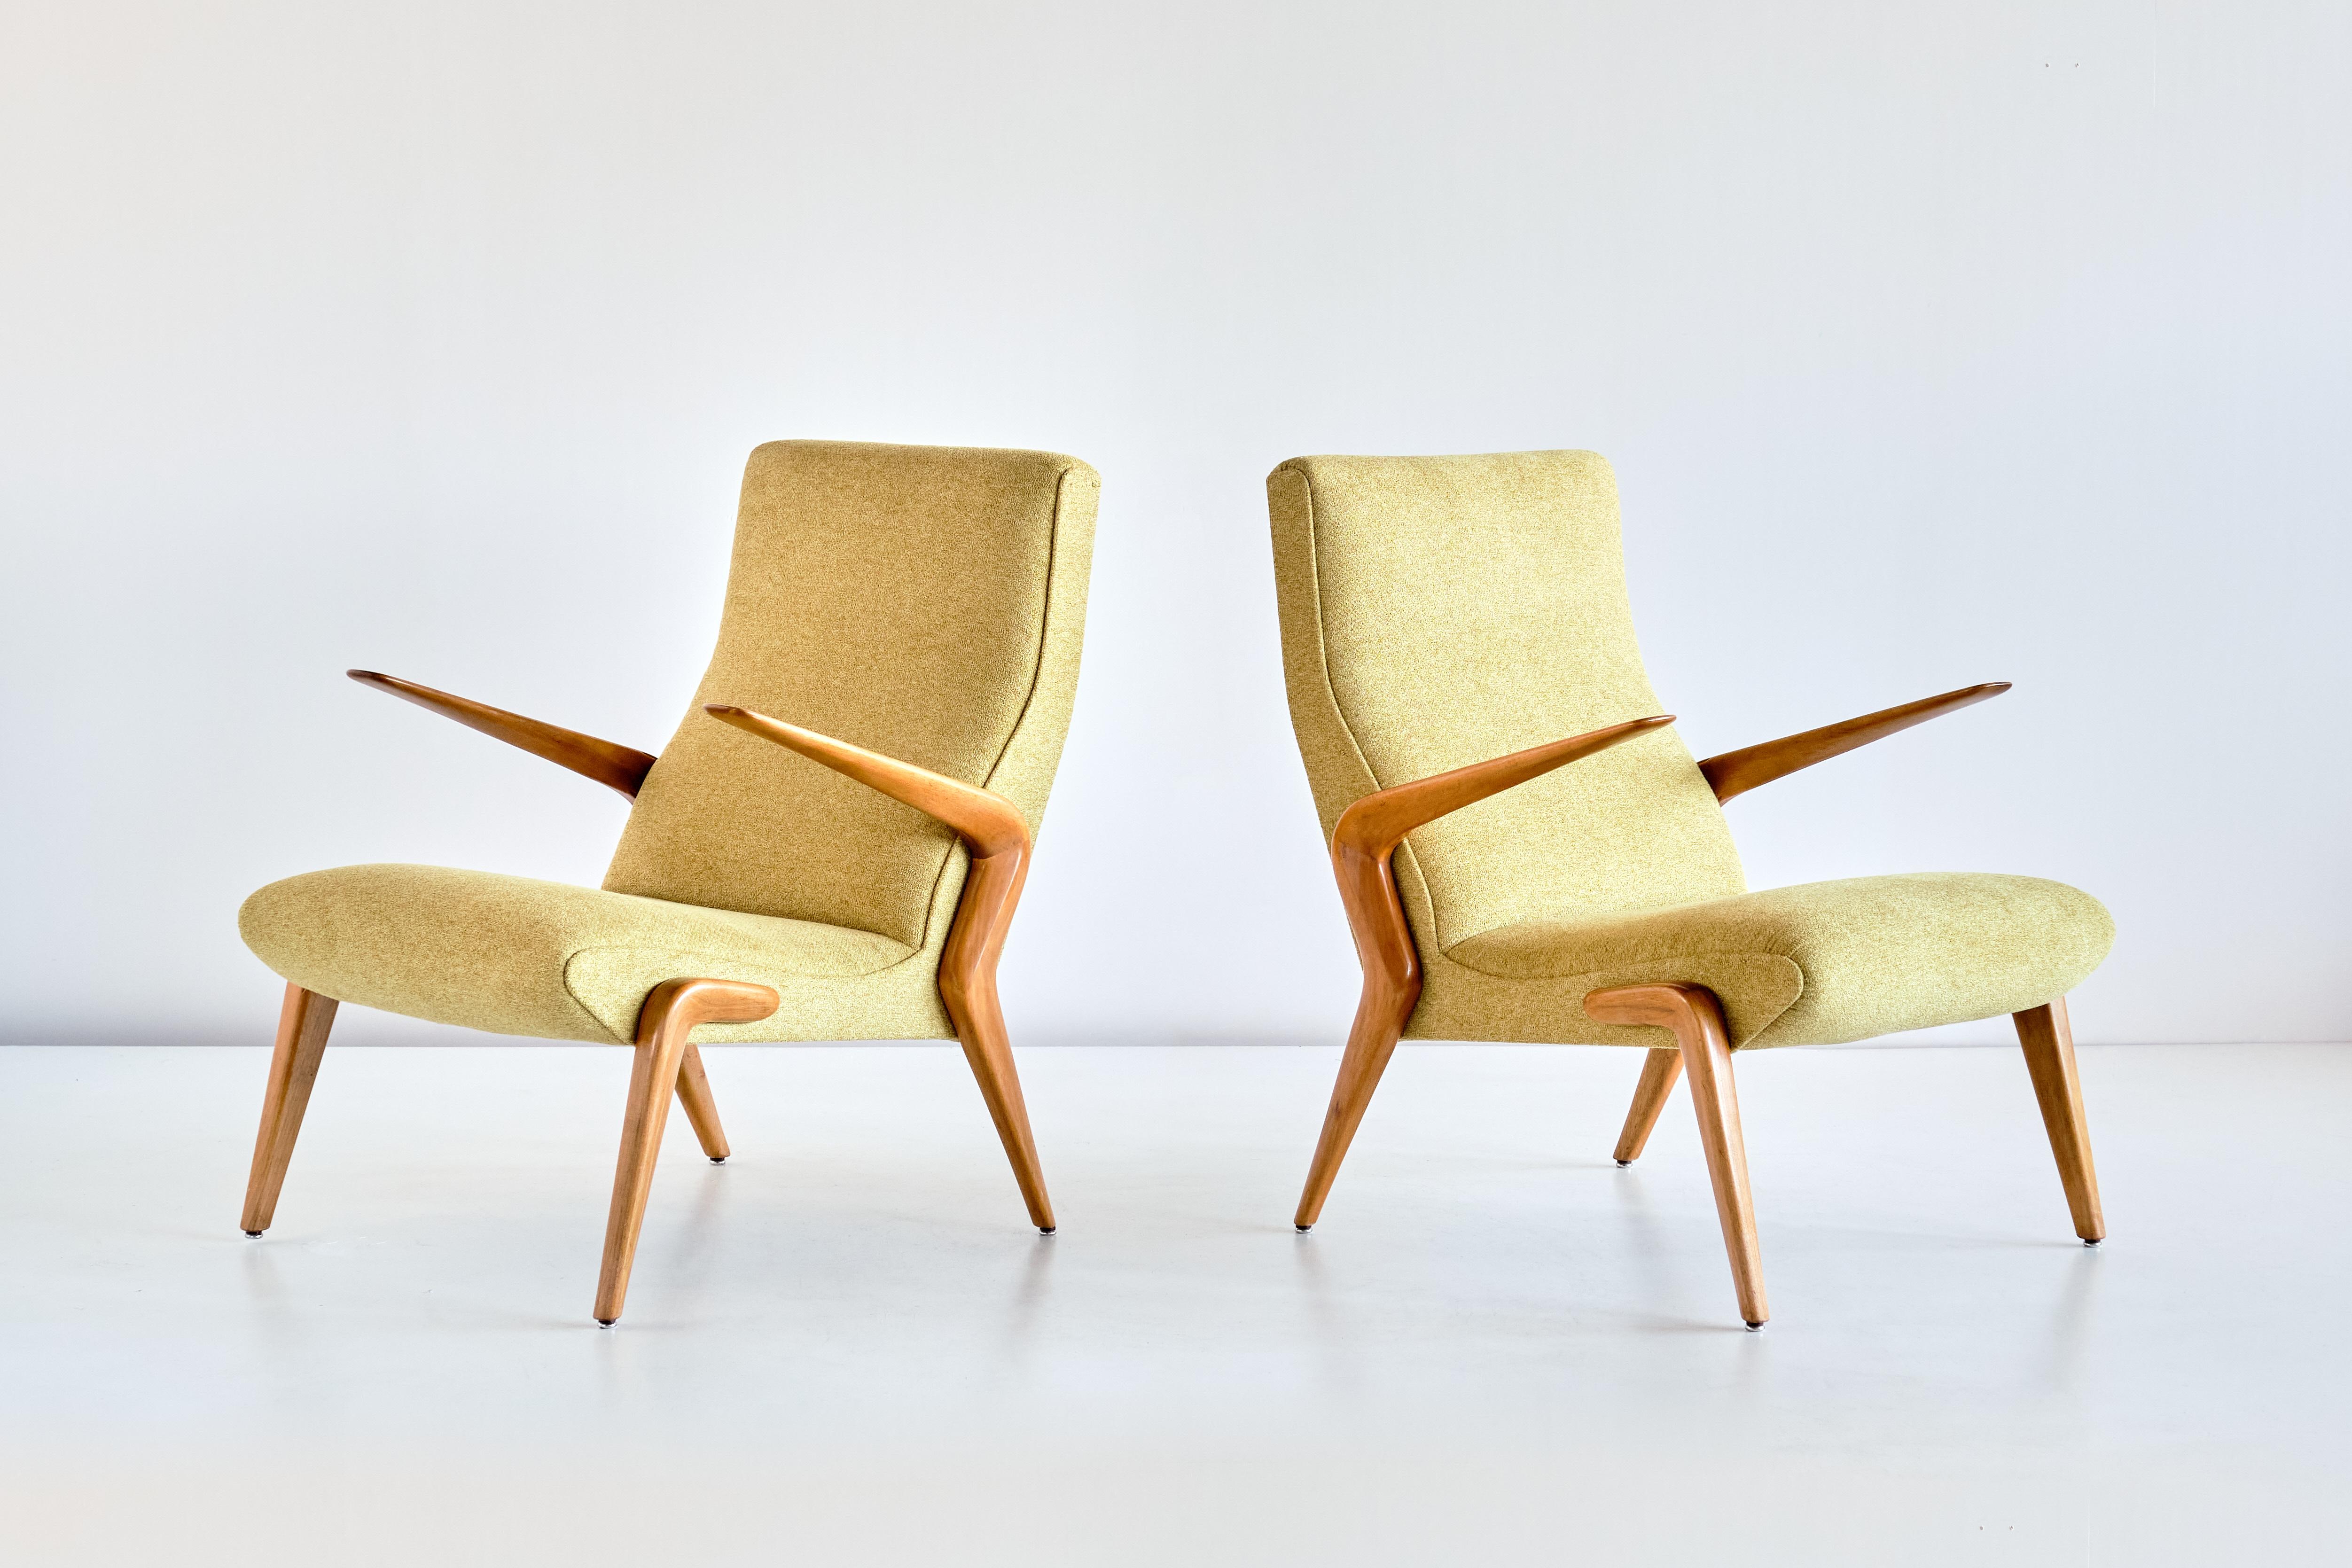 Dieses bedeutende Sesselpaar wurde von Osvaldo Borsani entworfen und 1954 von Tecno in Como, Italien, hergestellt. Die sehr seltene P71 war eines der ersten Modelle, die Tecno nach der Gründung des Unternehmens durch Osvaldo Borsani und seinen